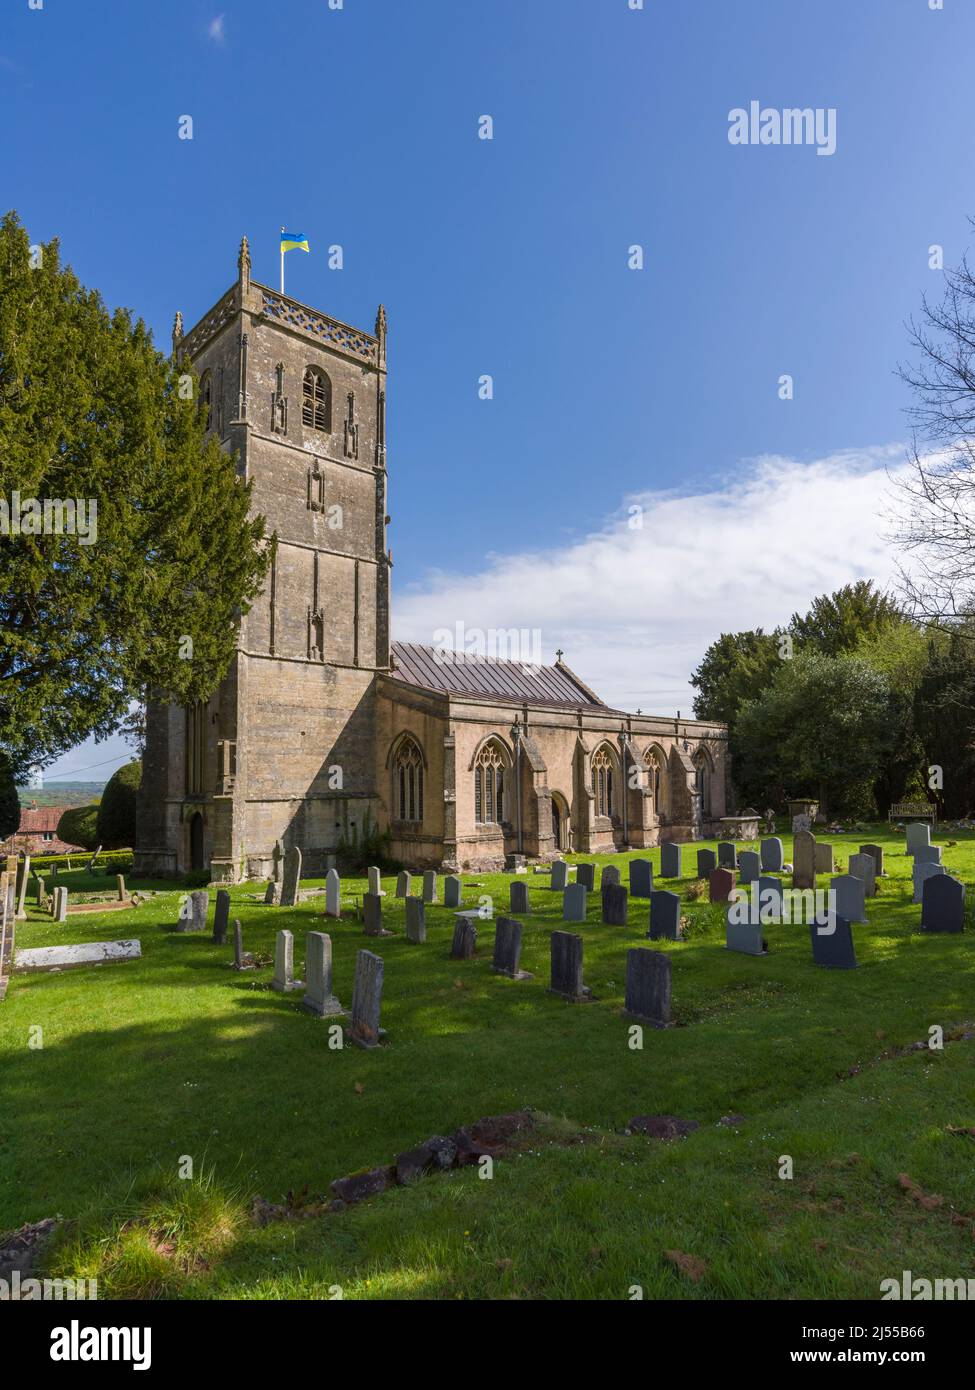 L'église normande de St Michael l'Archange à Compton Martin dans le paysage national de Mendip Hills, Somerset, Angleterre. Banque D'Images